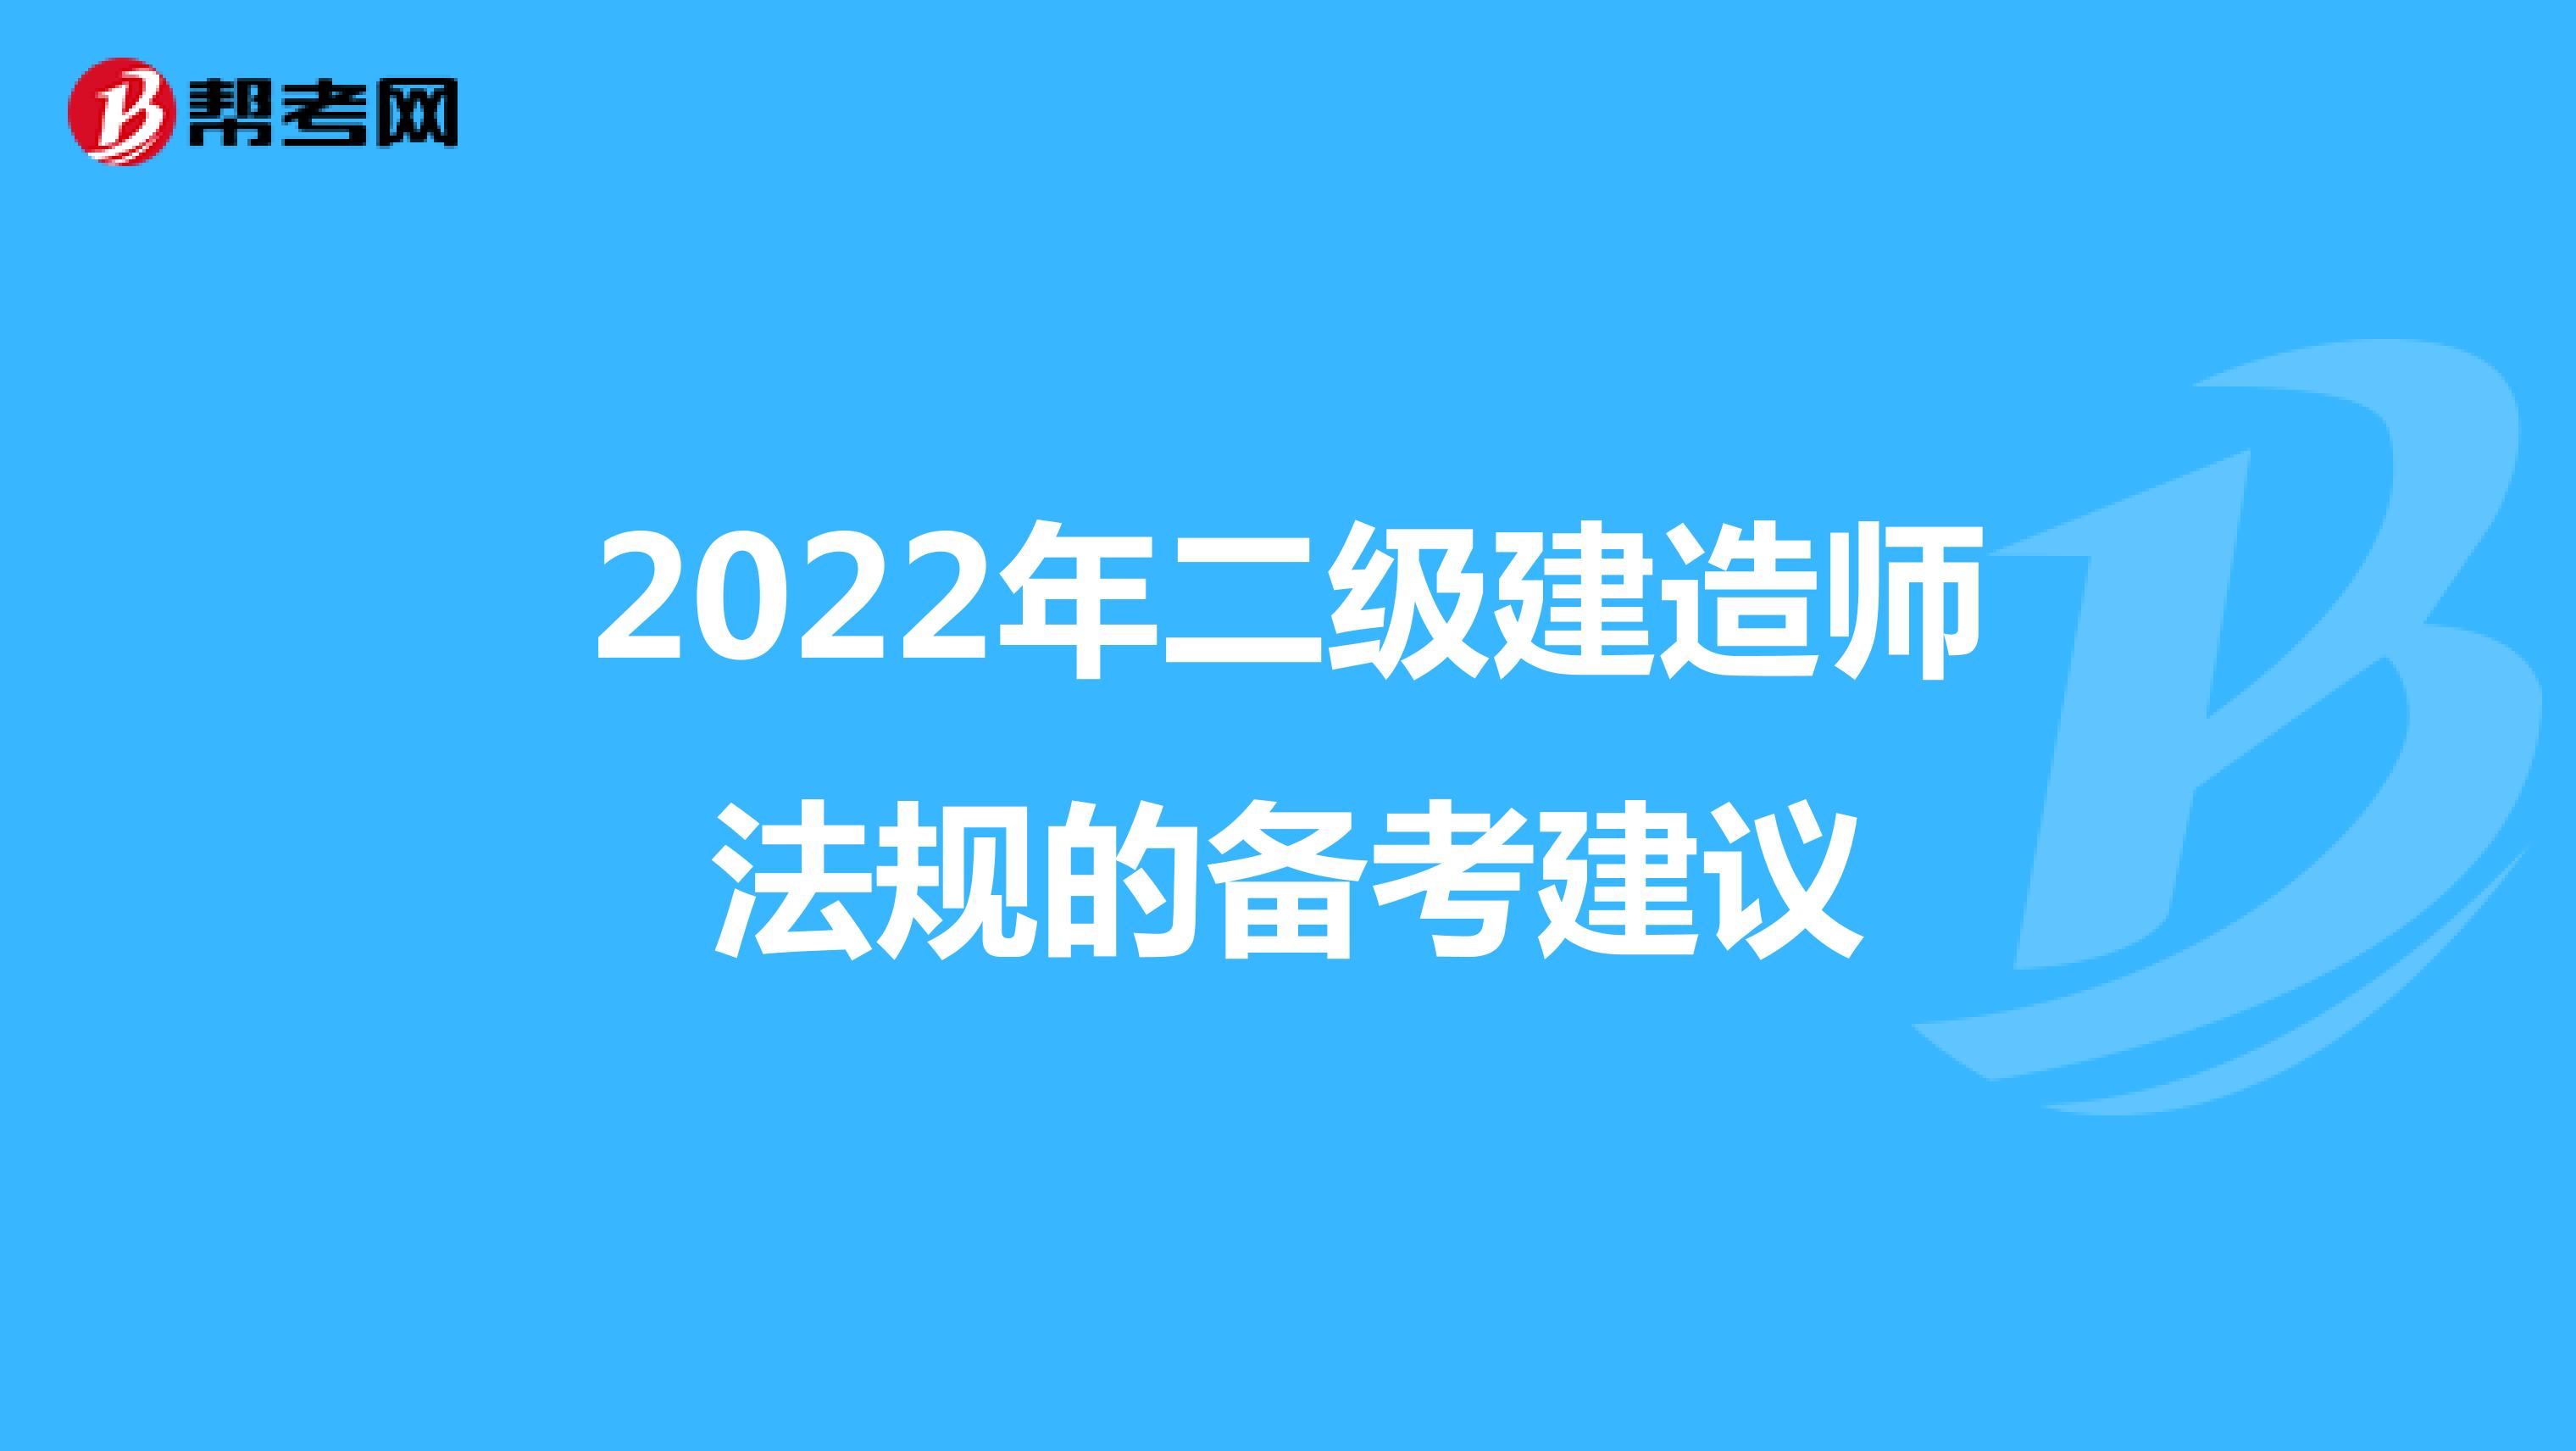 2022年二级建造师法规的备考建议